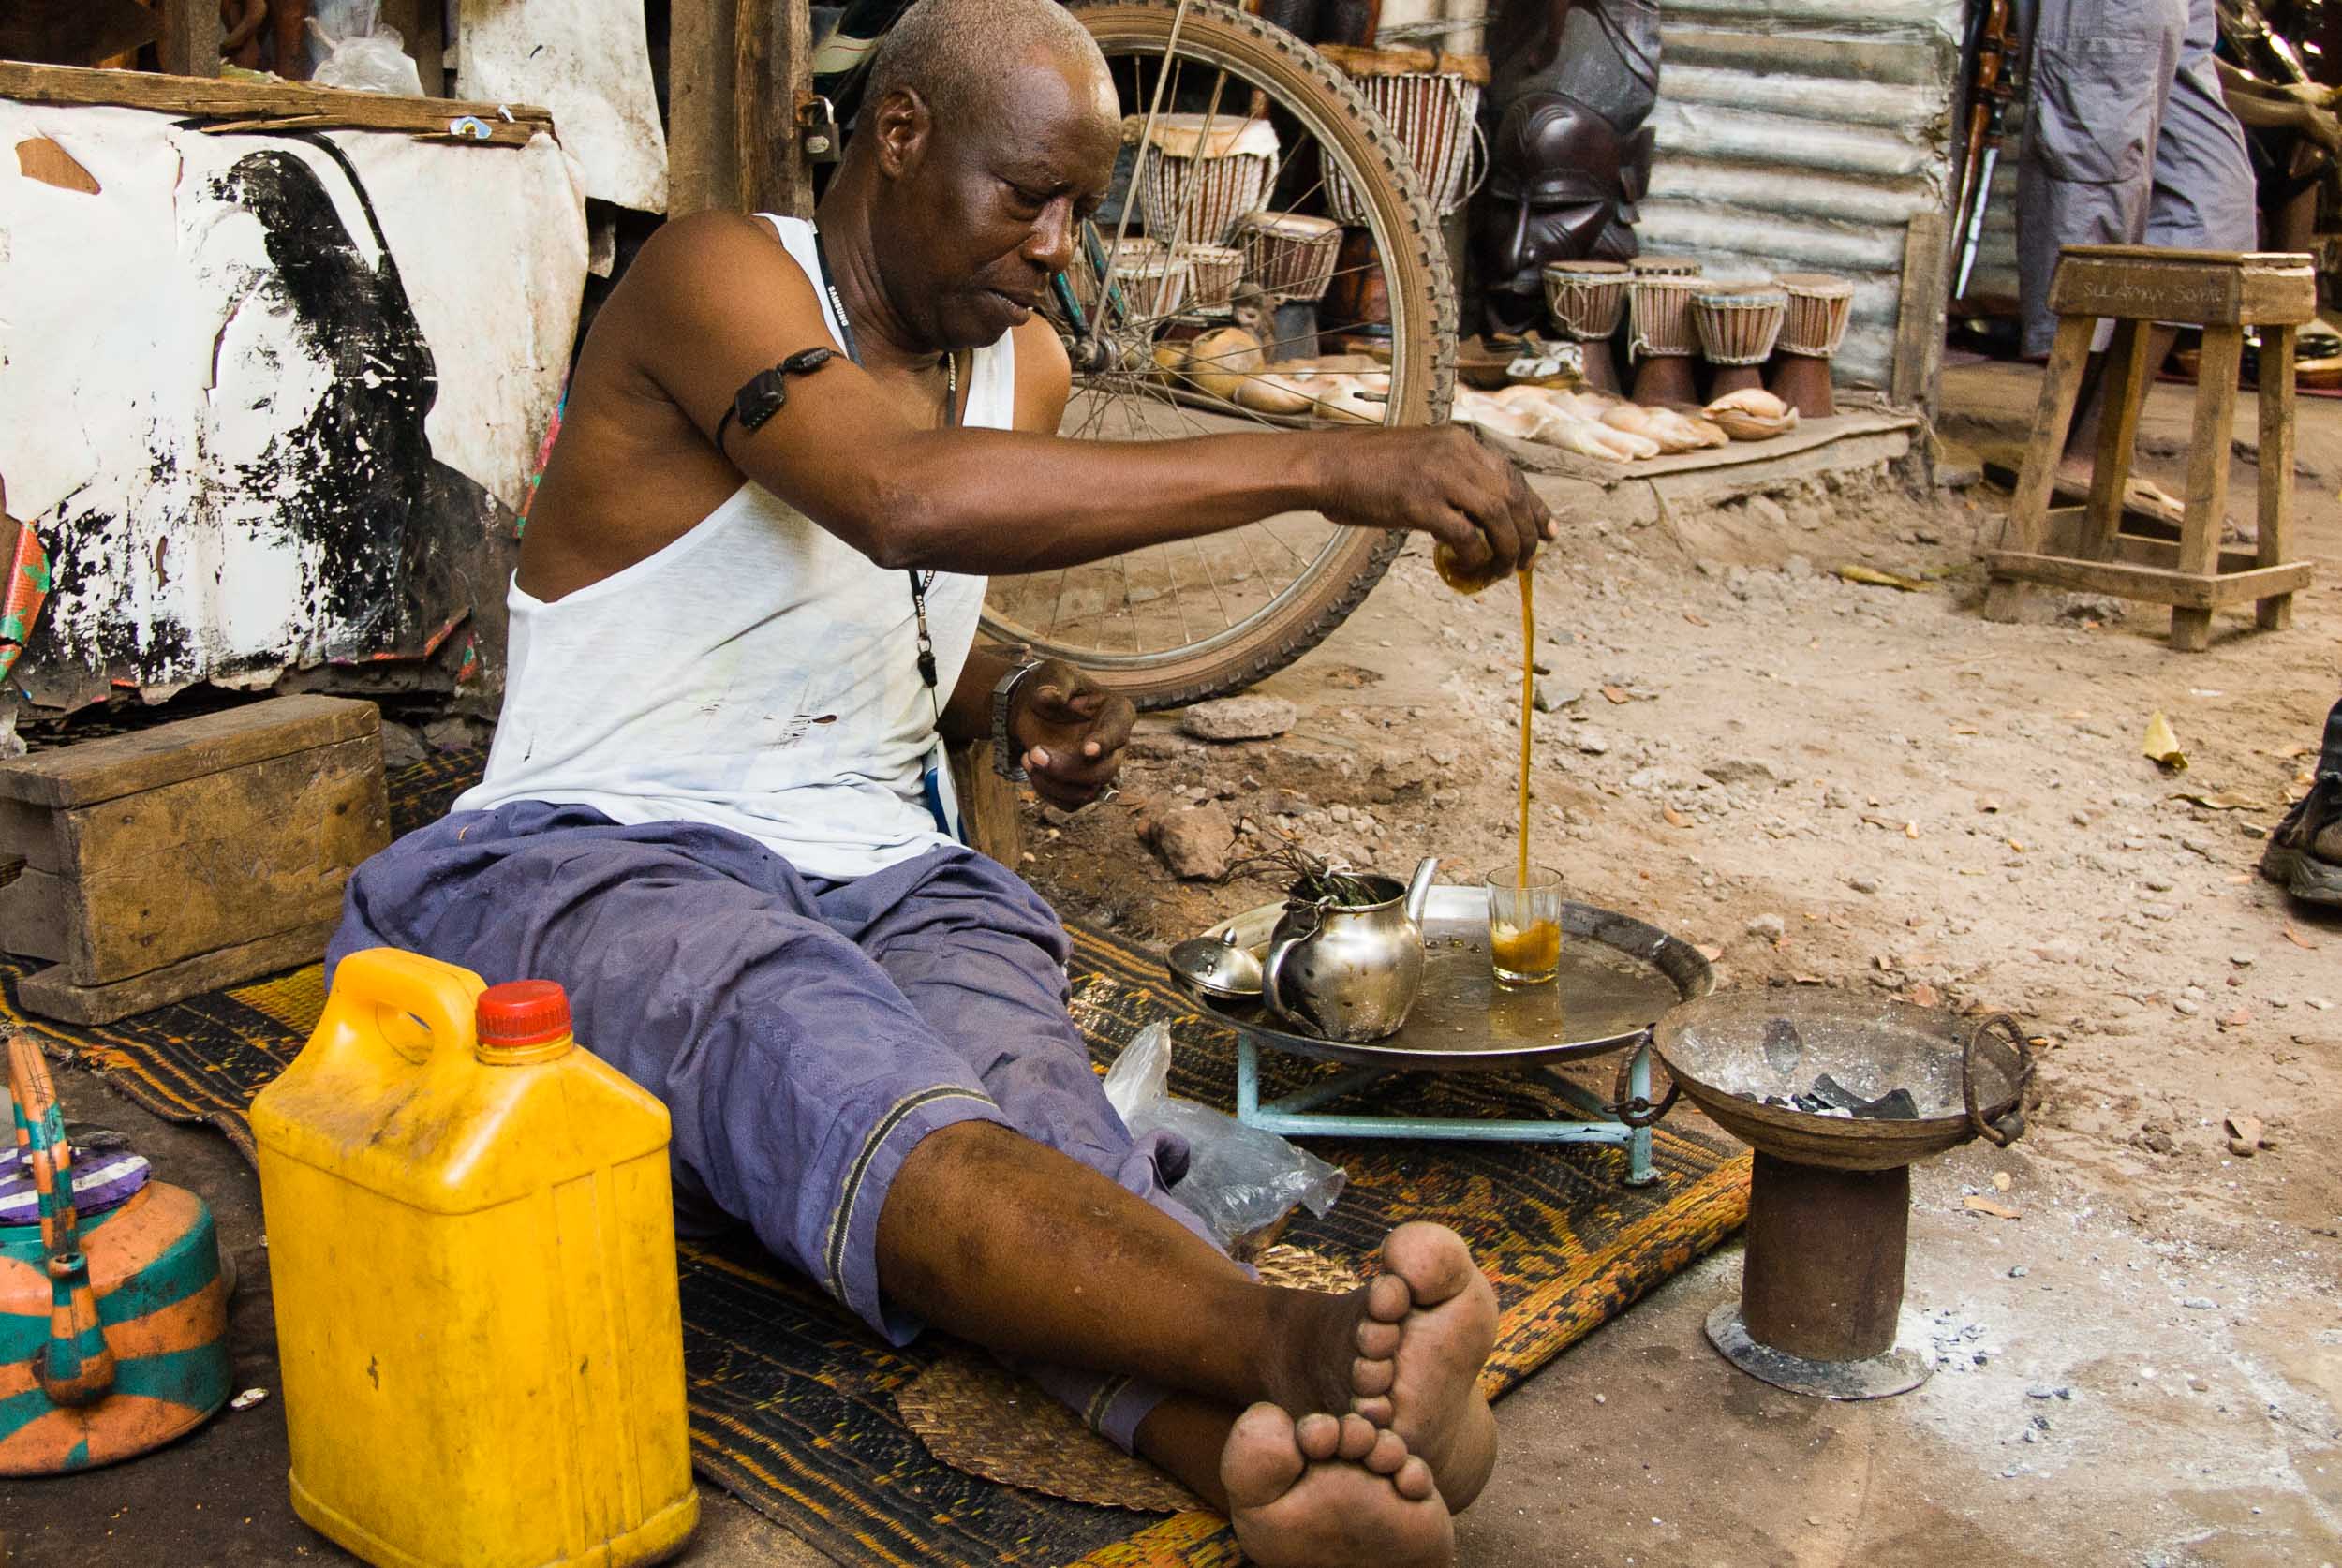  Preparing Tea, Ataya, Gambia, Africa 